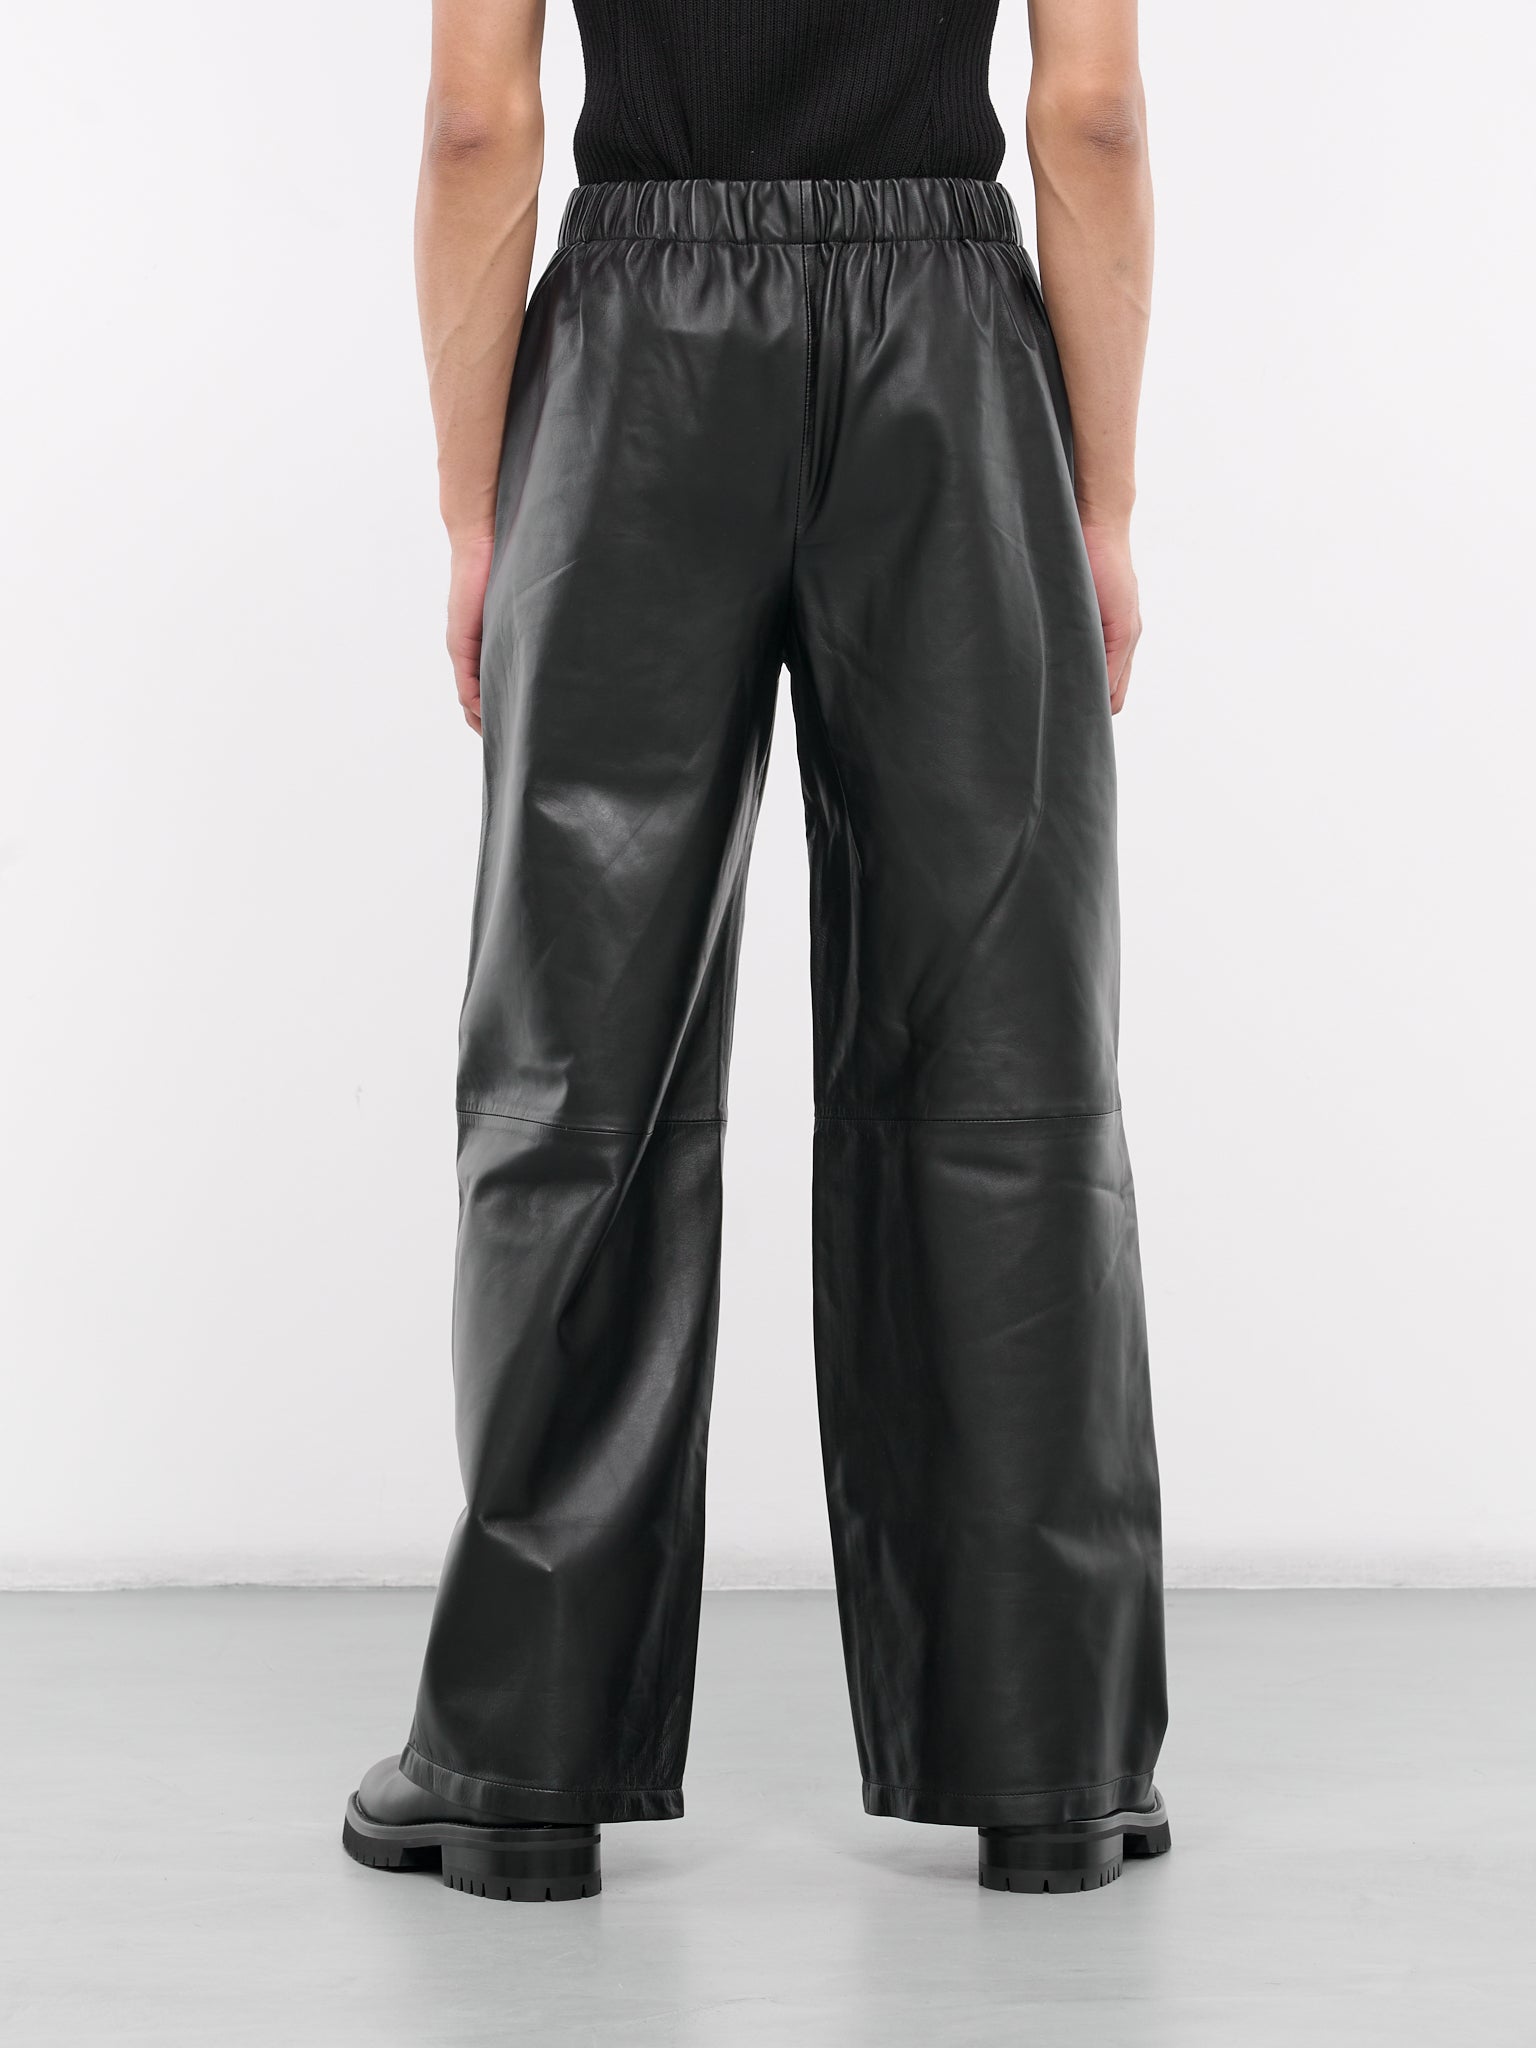 Leather Boxer Pants (CO-PT006-M-LEA001-BLACK)